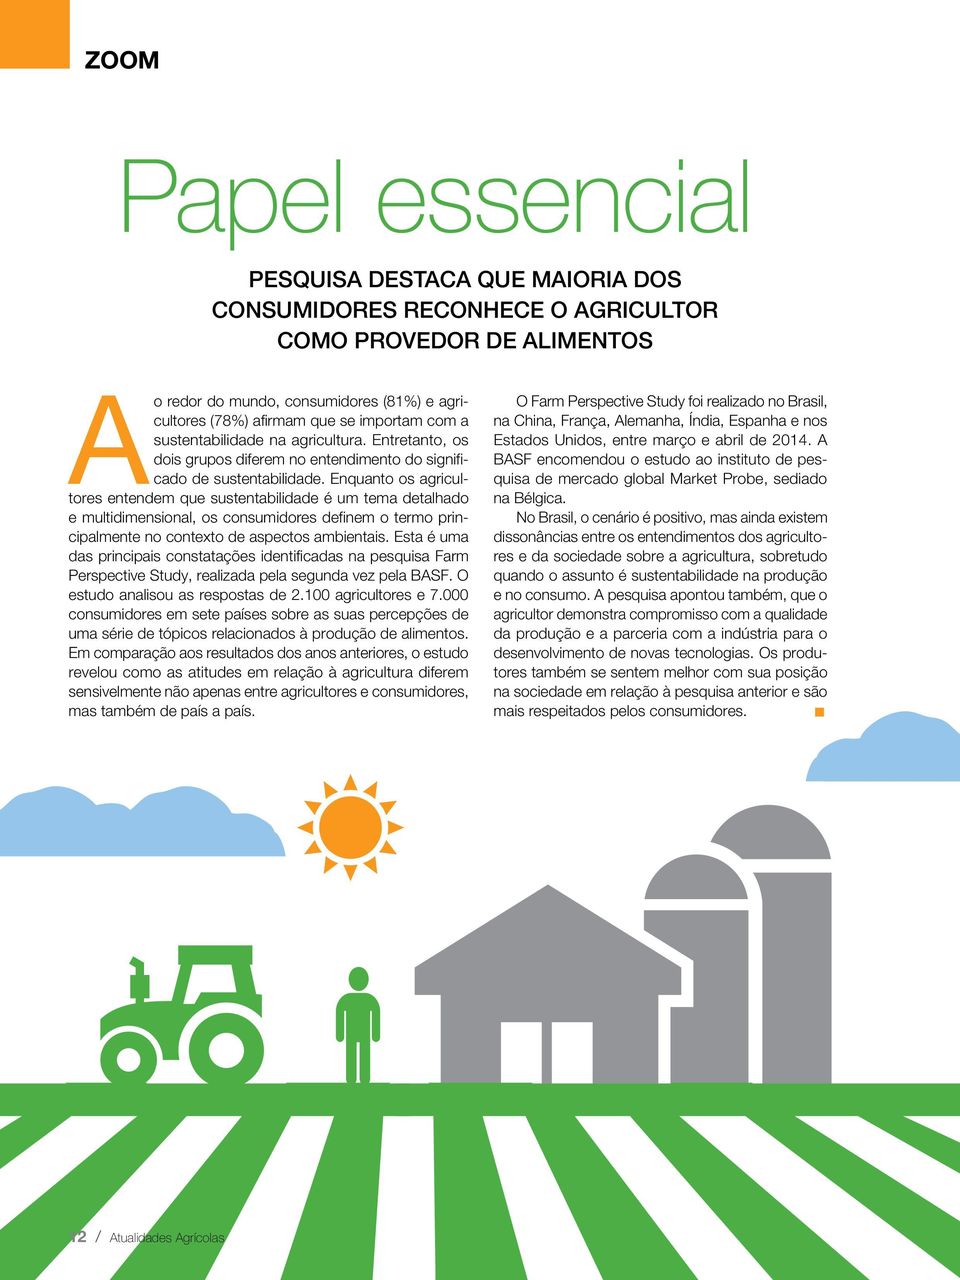 Enquanto os agricultores entendem que sustentabilidade é um tema detalhado e multidimensional, os consumidores definem o termo principalmente no contexto de aspectos ambientais.